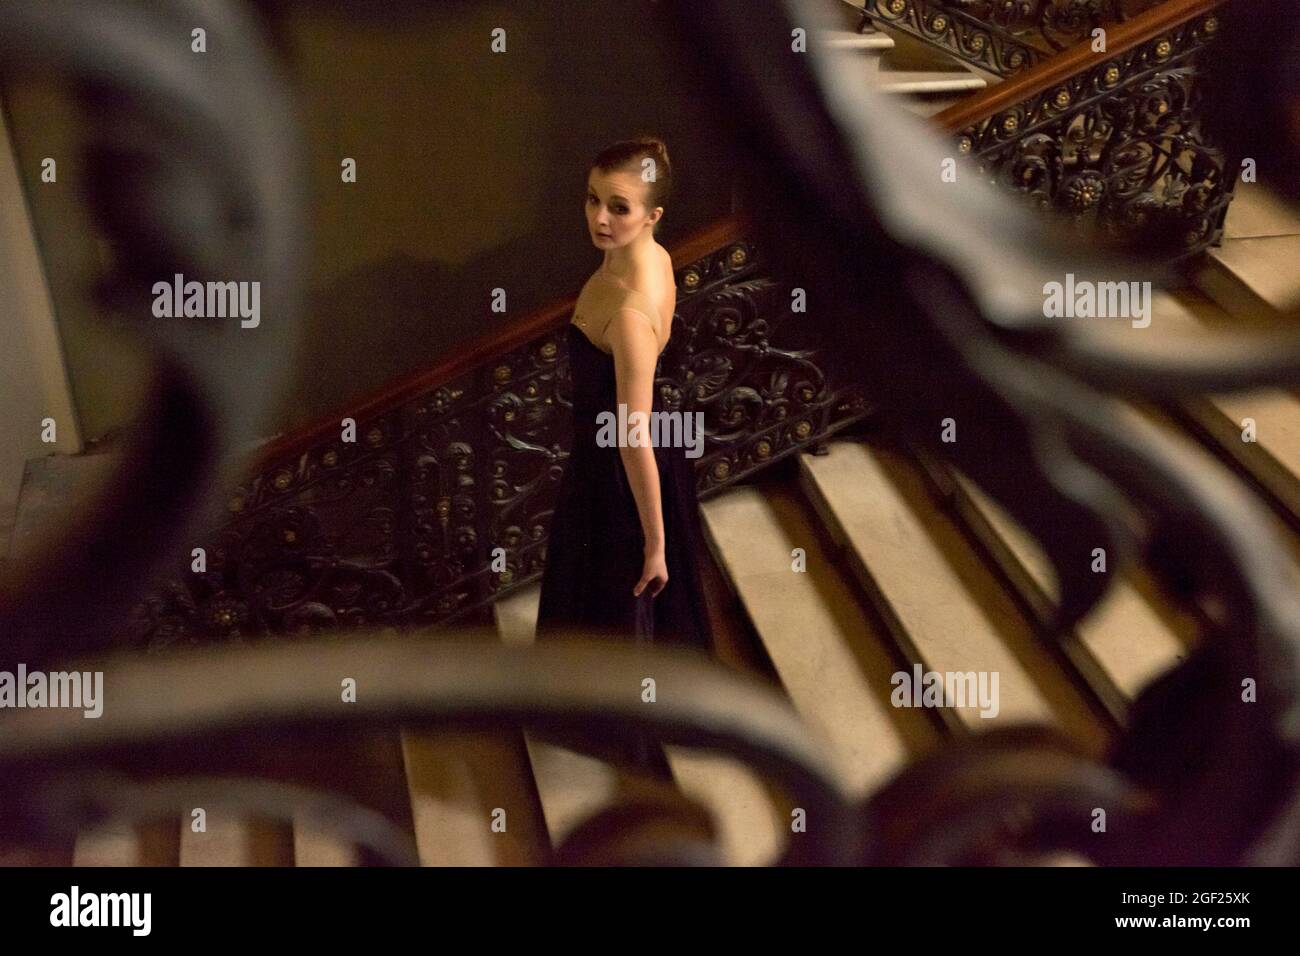 Une belle jeune femme vêtue d'une élégante robe descend un escalier élaboré dans un ancien palais russe de Saint-Pétersbourg Banque D'Images